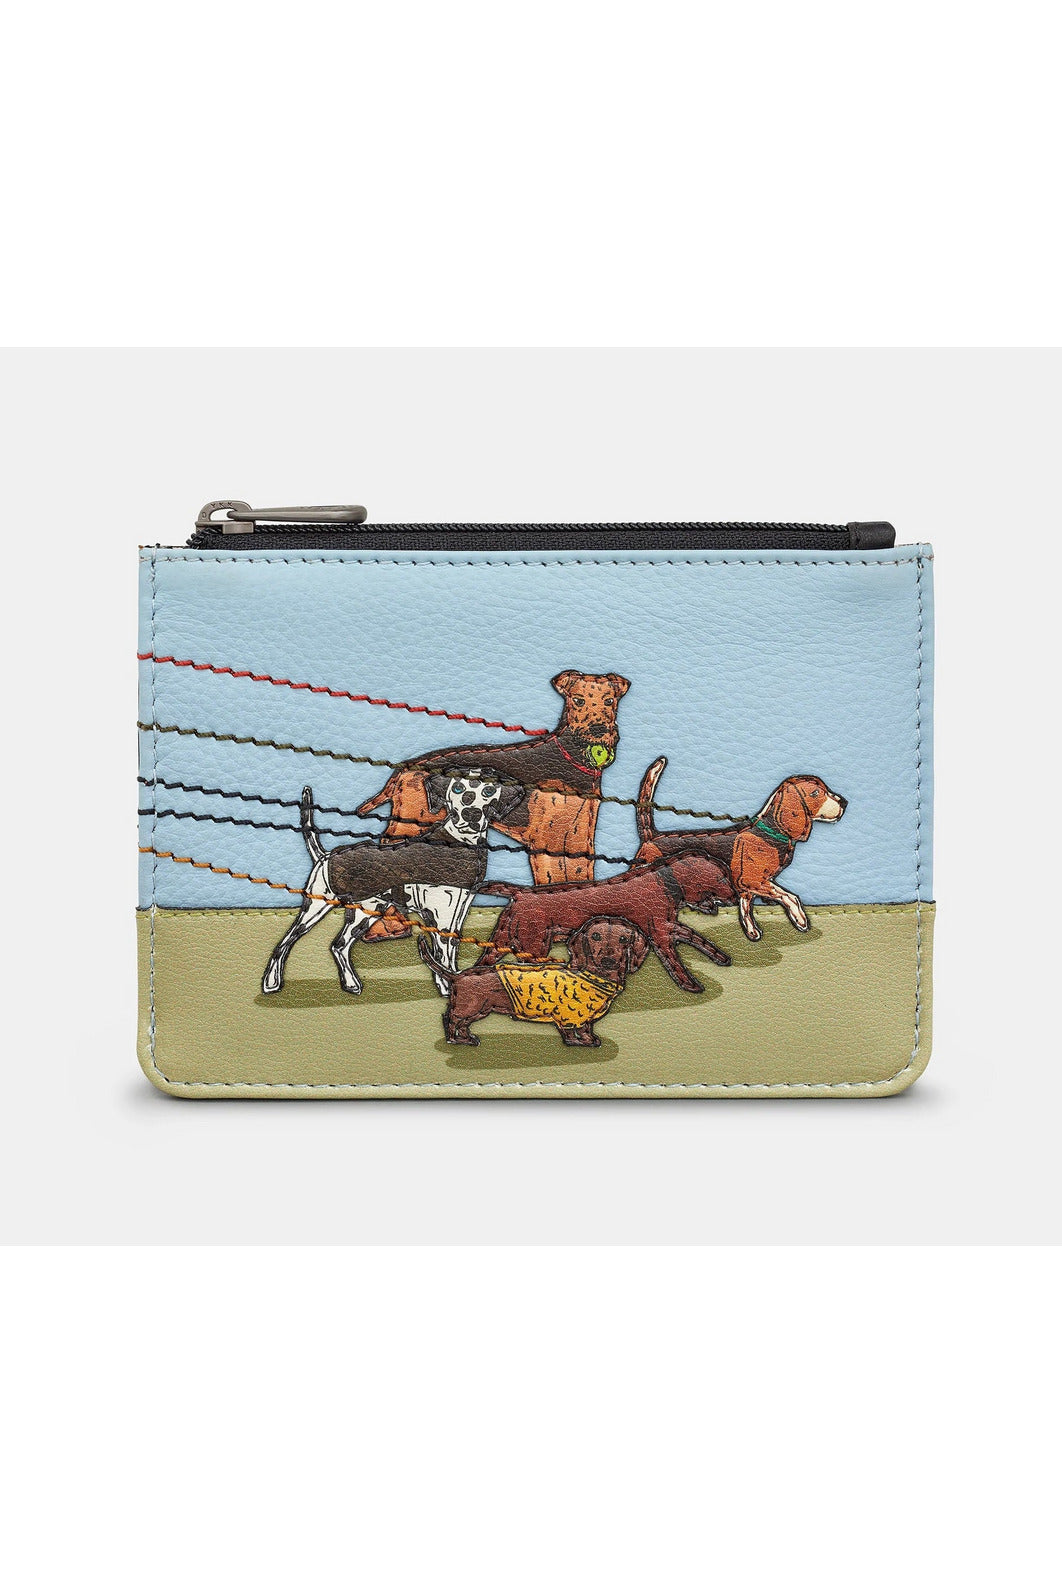 Signare Tapestry Crossbody Bag Shoulder Purse for Women In Dachshund Dog  Design (XB02-DACH): Handbags: Amazon.com